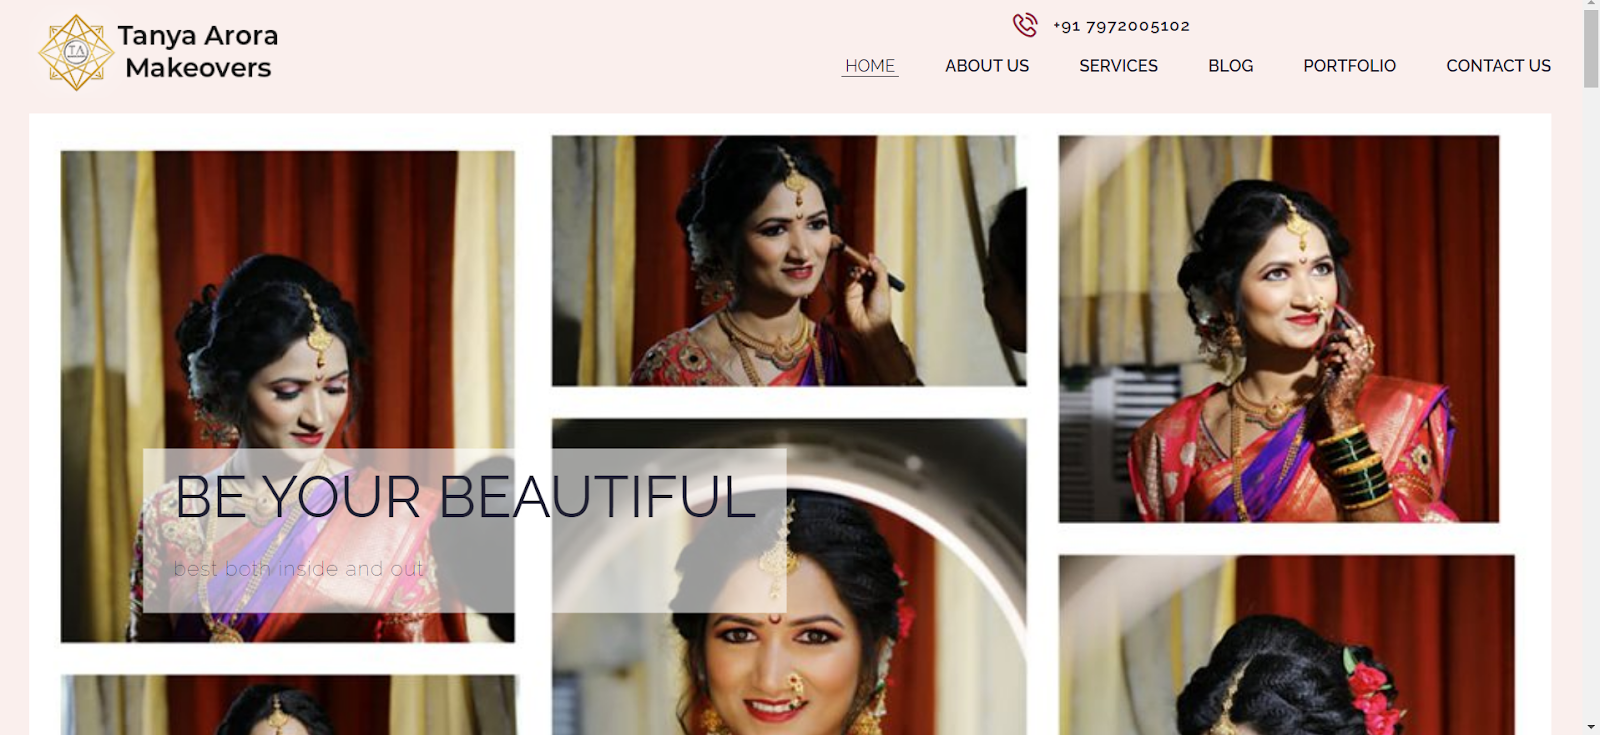 makeup artist website, Tanya Arora